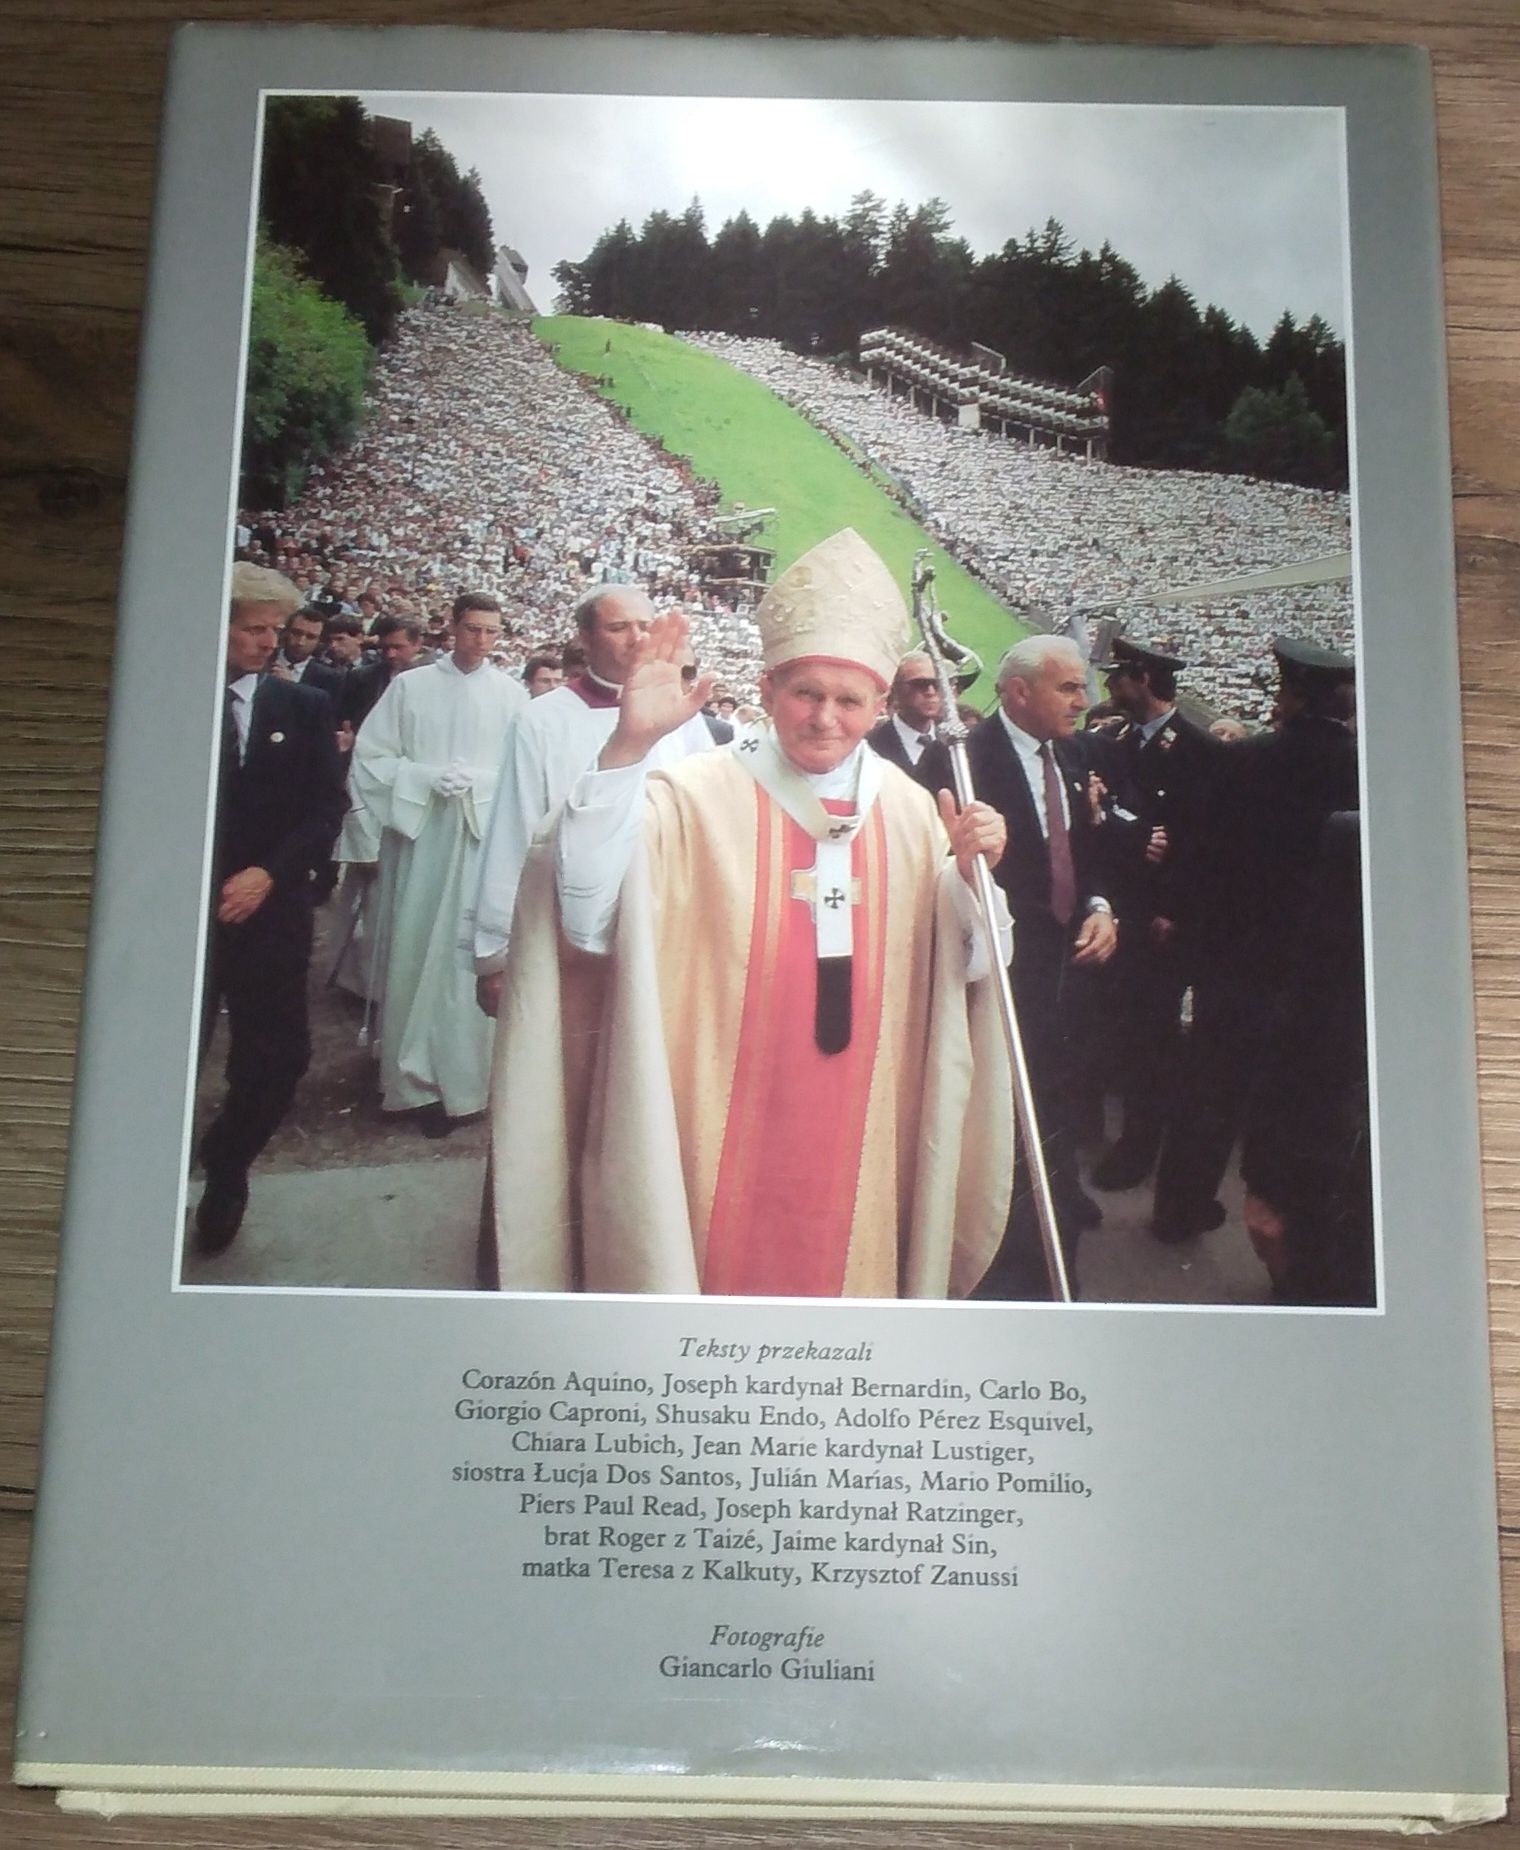 Jan Paweł II pielgrzym Ewangelii - Edycja Paulińska